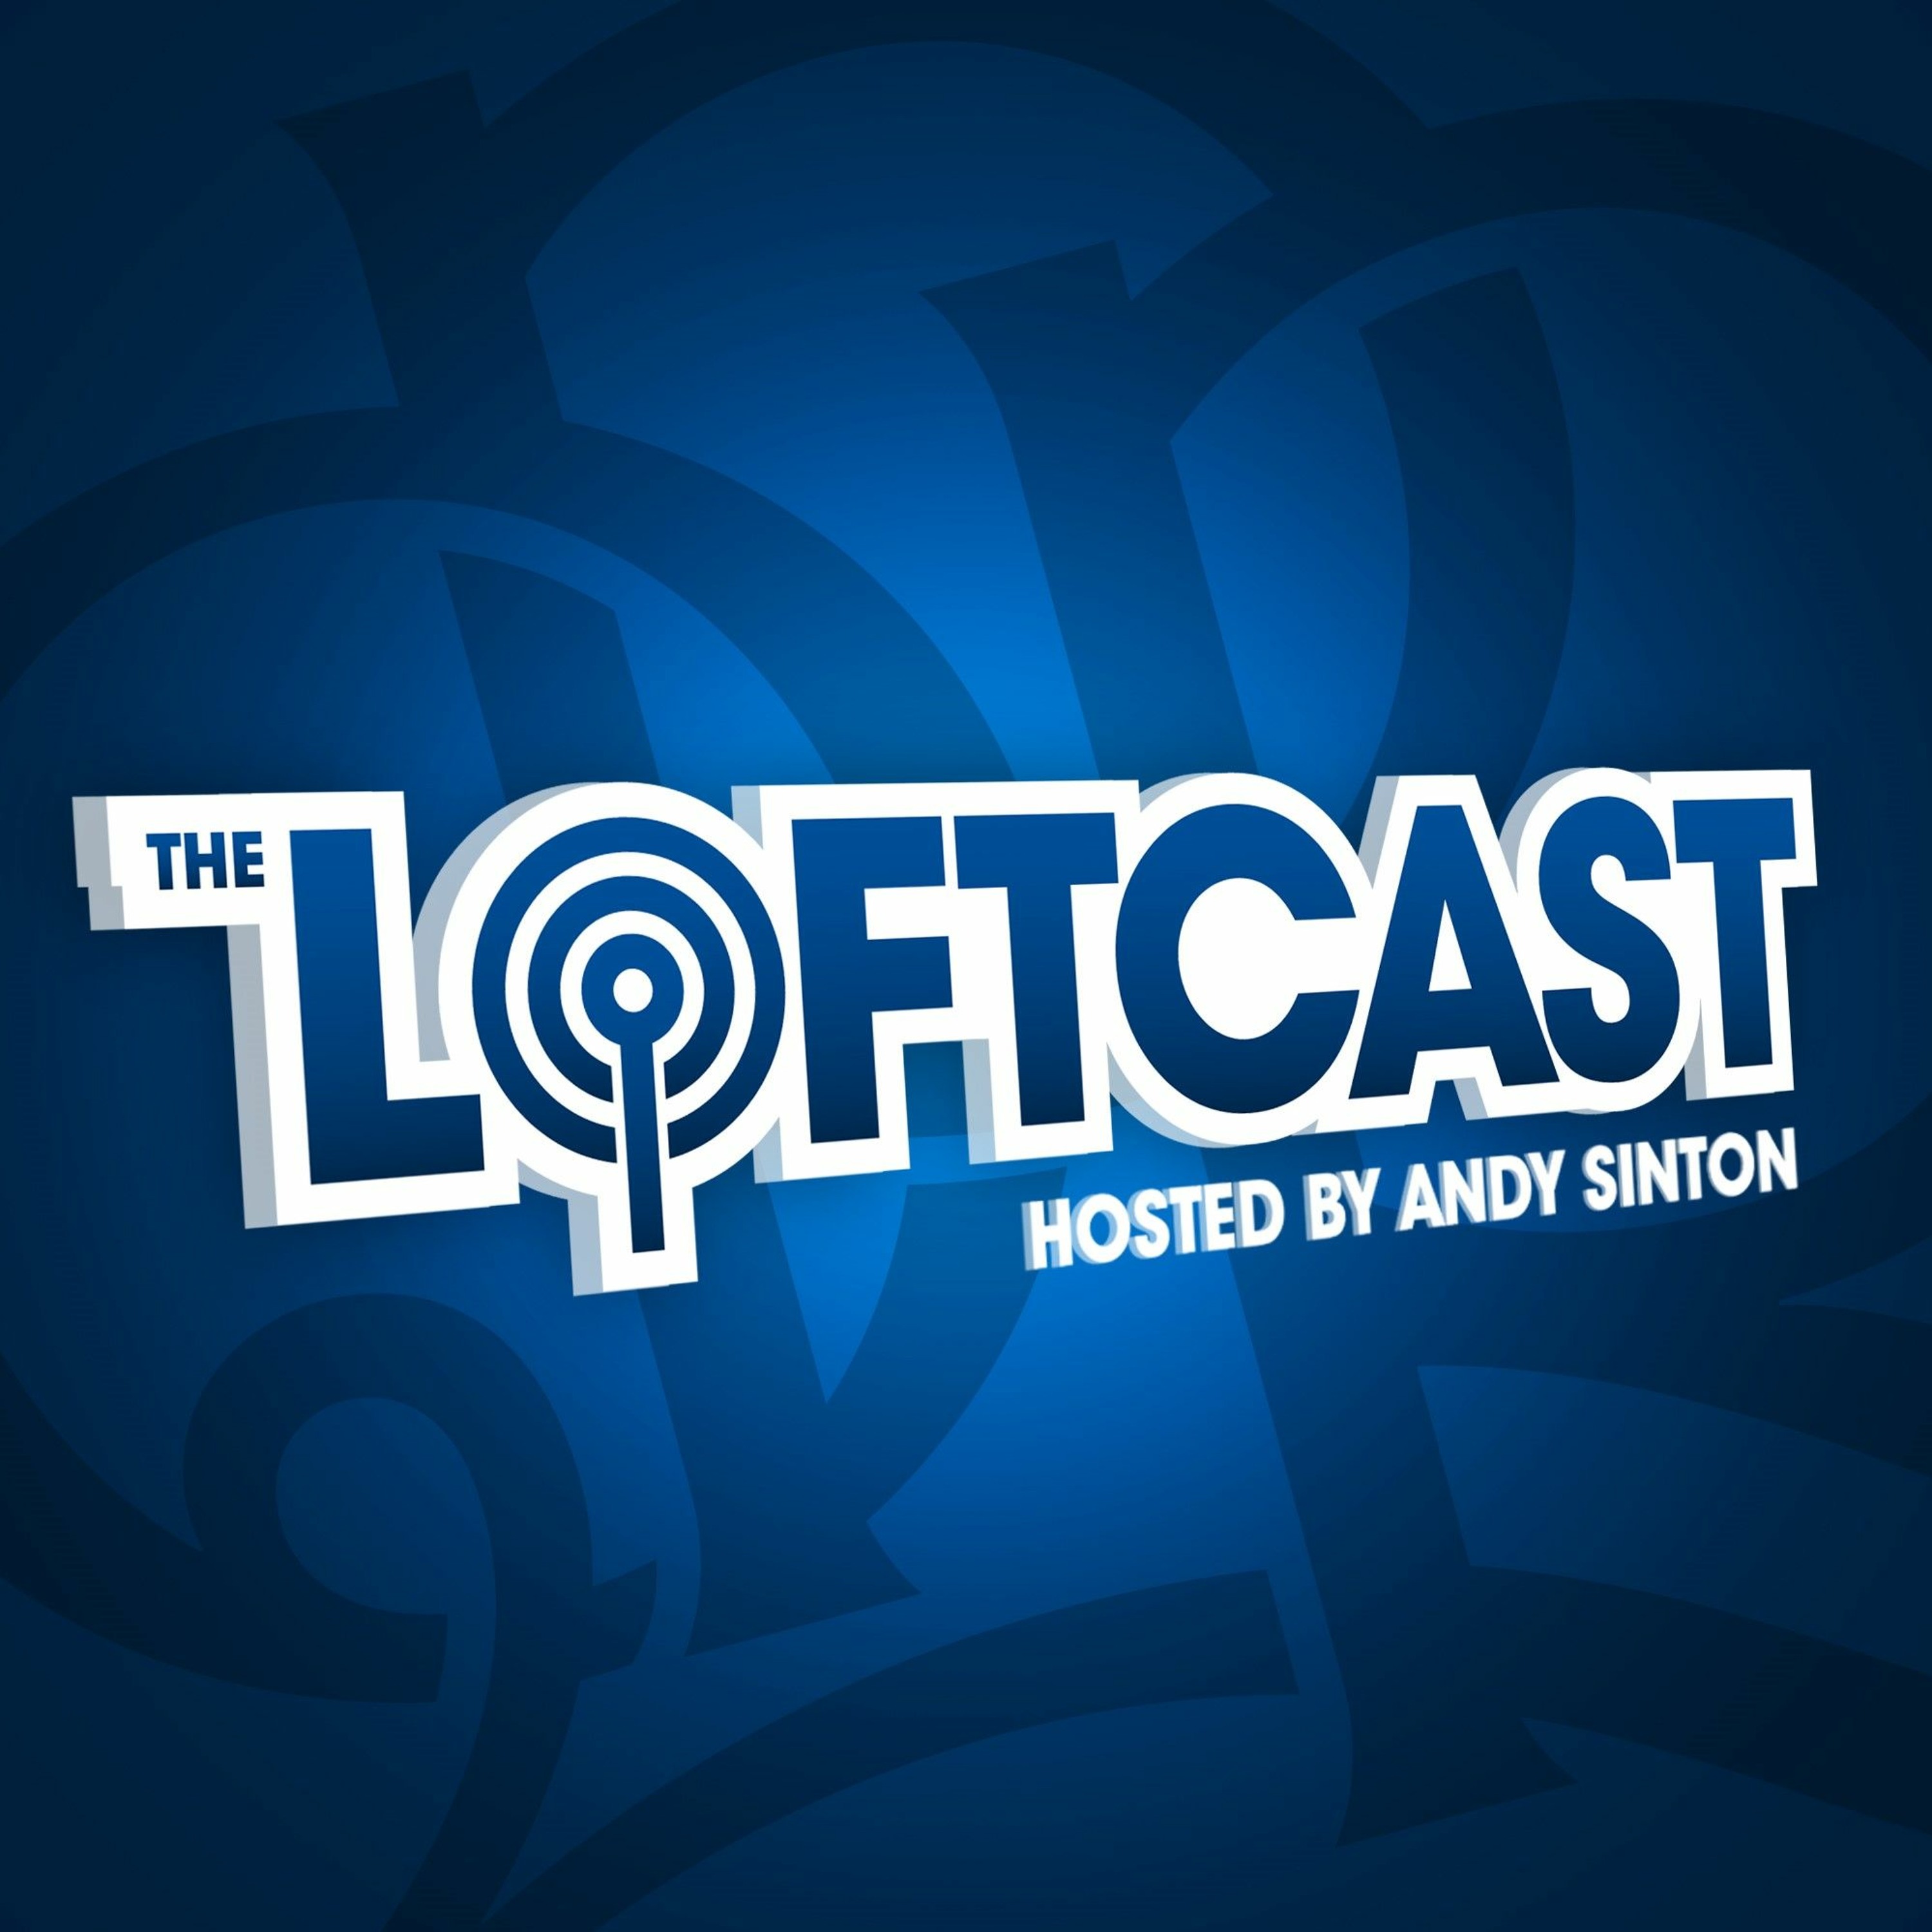 The Loftcast: Tom Carroll’s ready